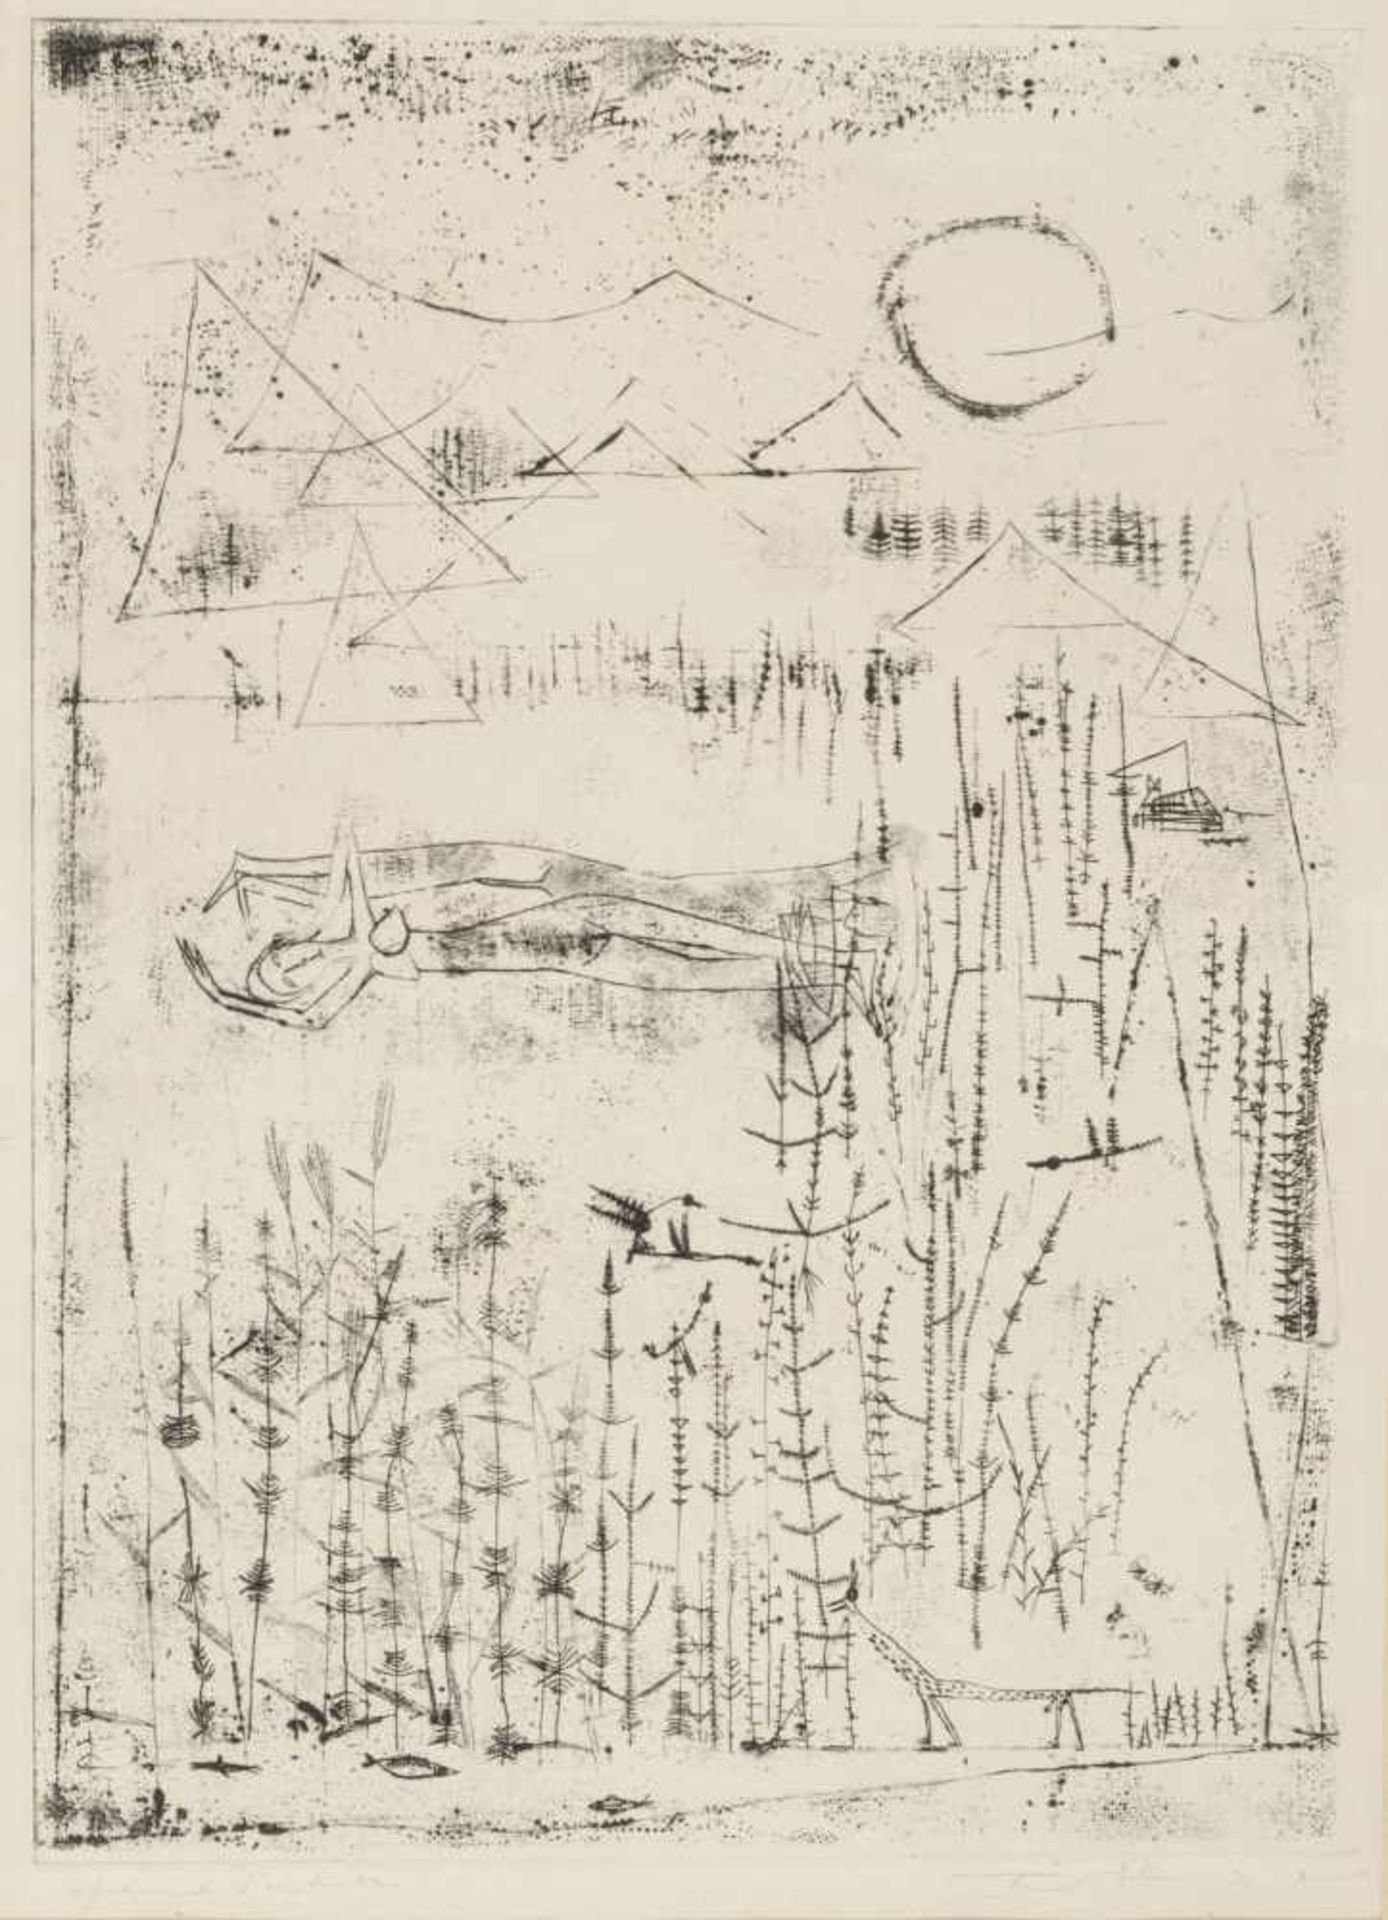 ZAO WOU-KI (1921-2013) Composición Grabado de 36 x 26 cm. Firmado.<